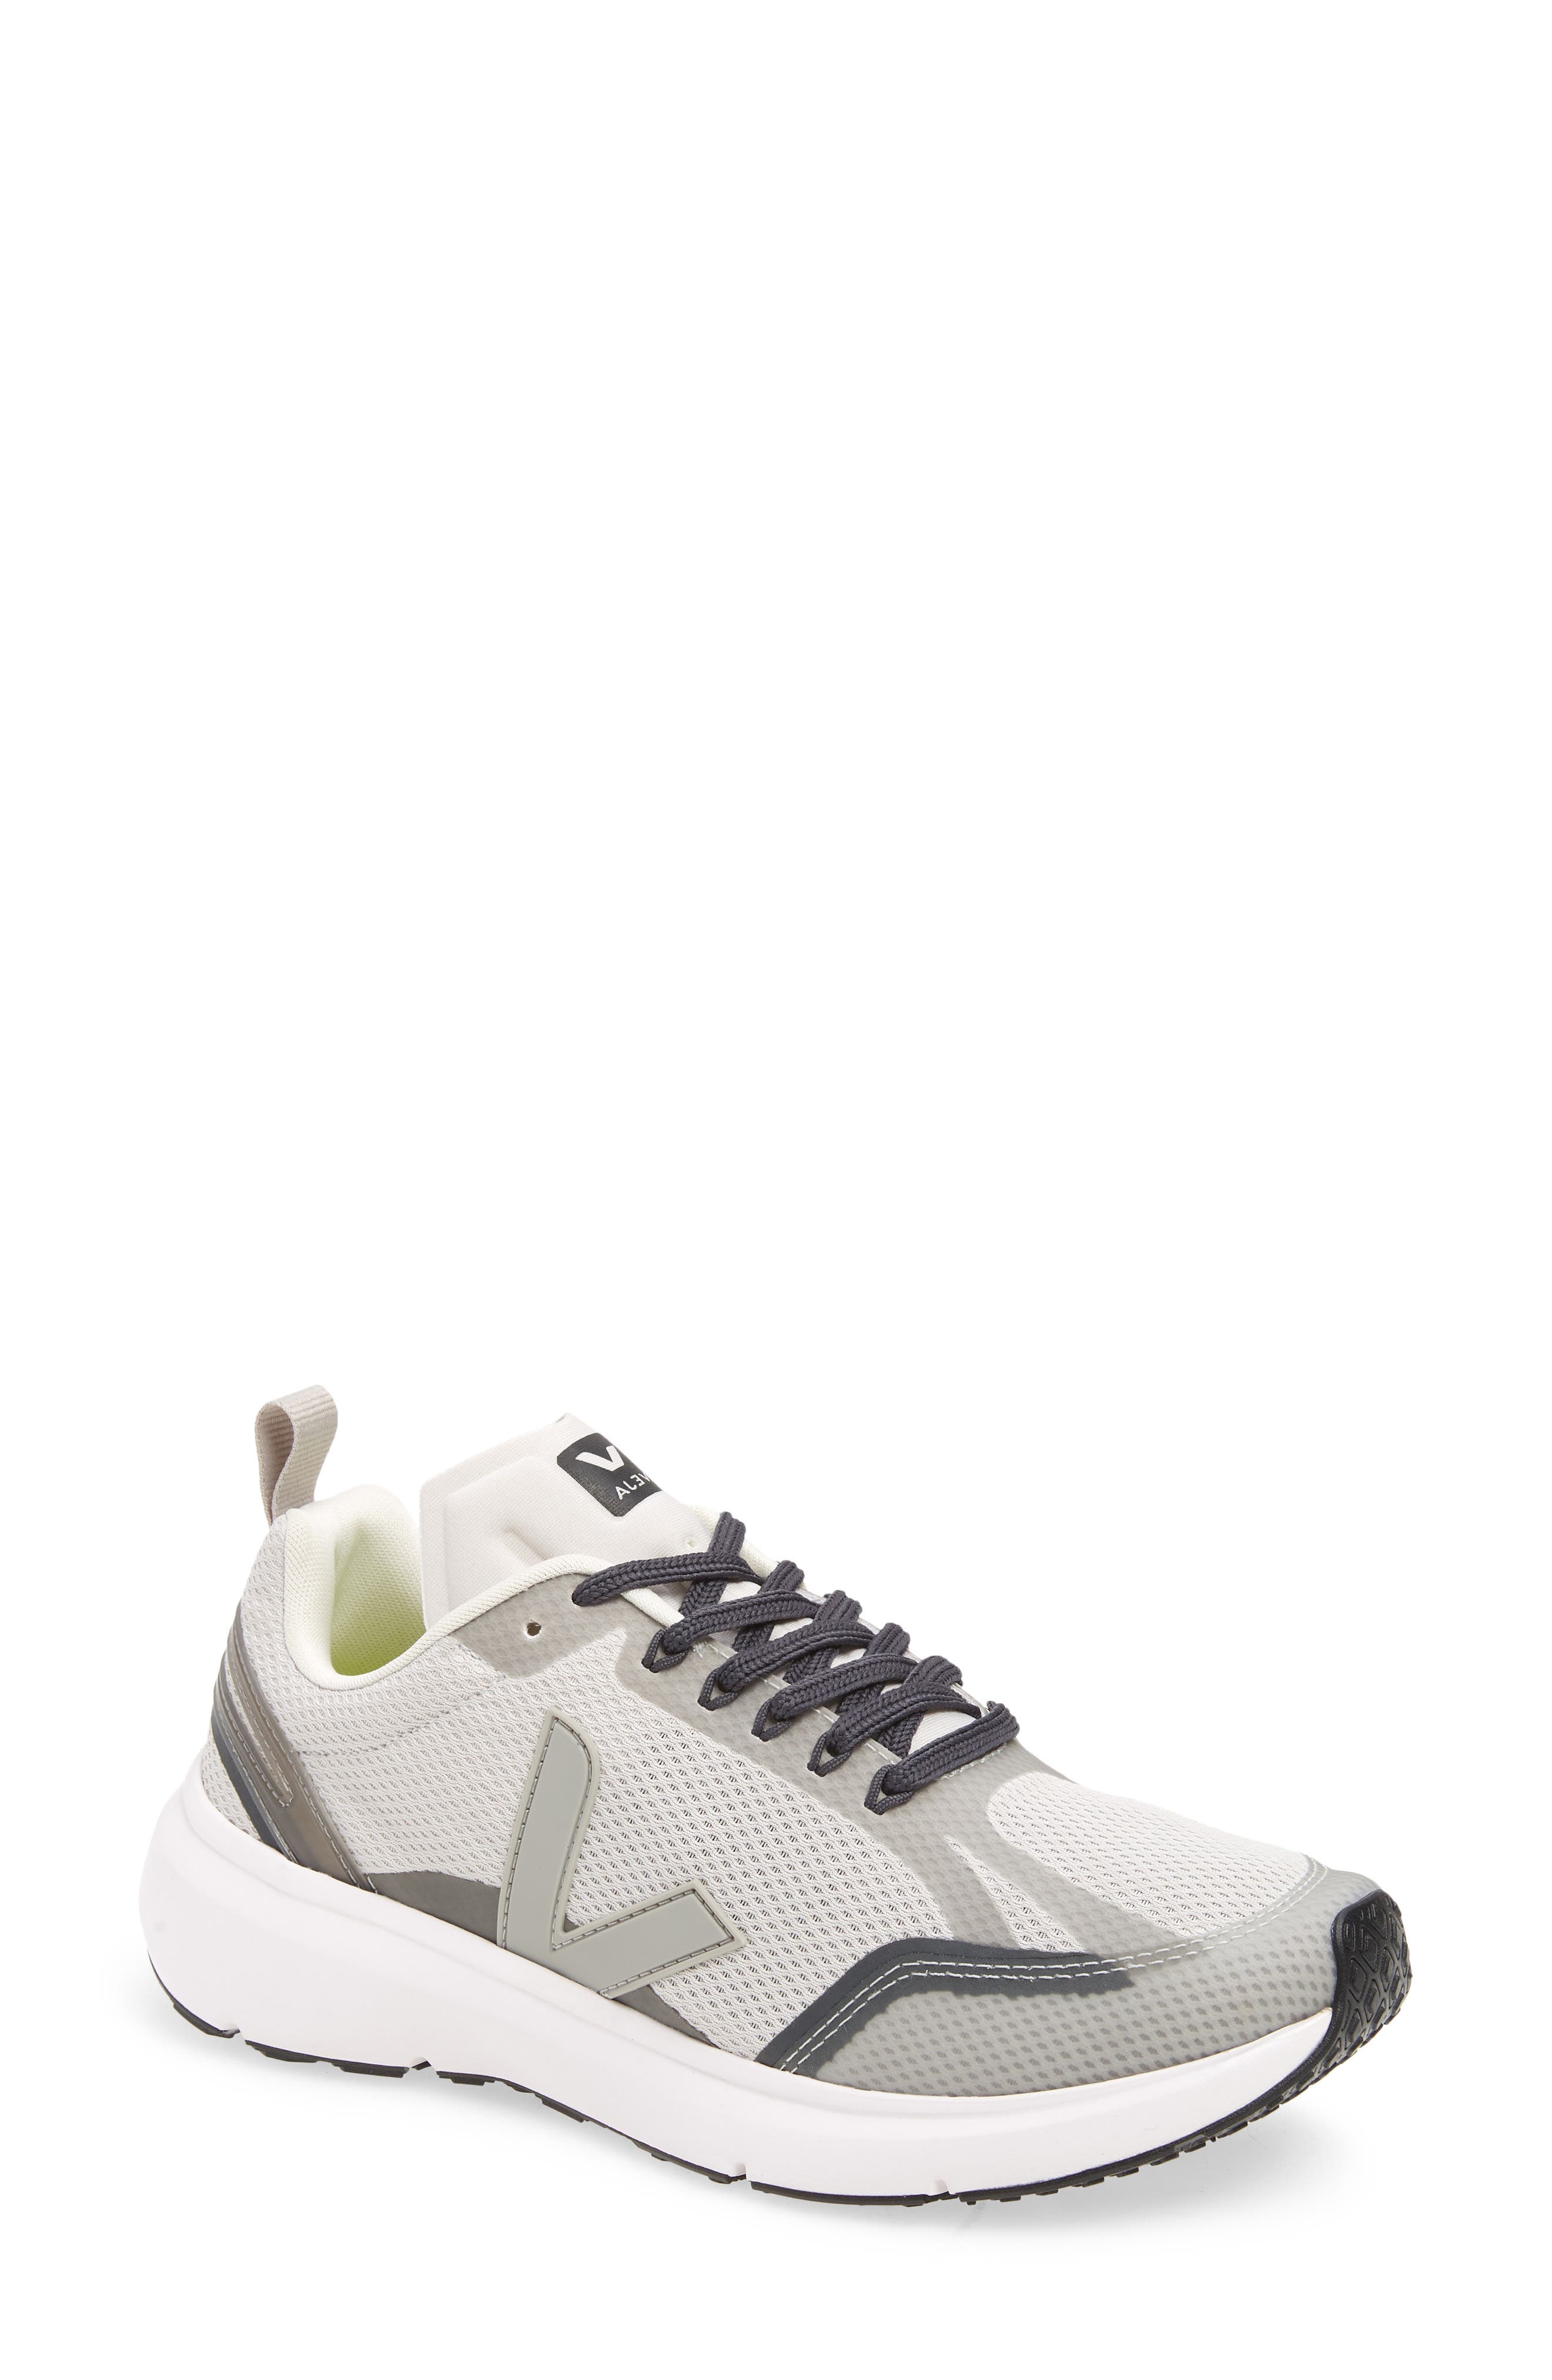 Veja Condor Sneaker in Light Grey/Oxford Grey at Nordstrom, Size 10Us